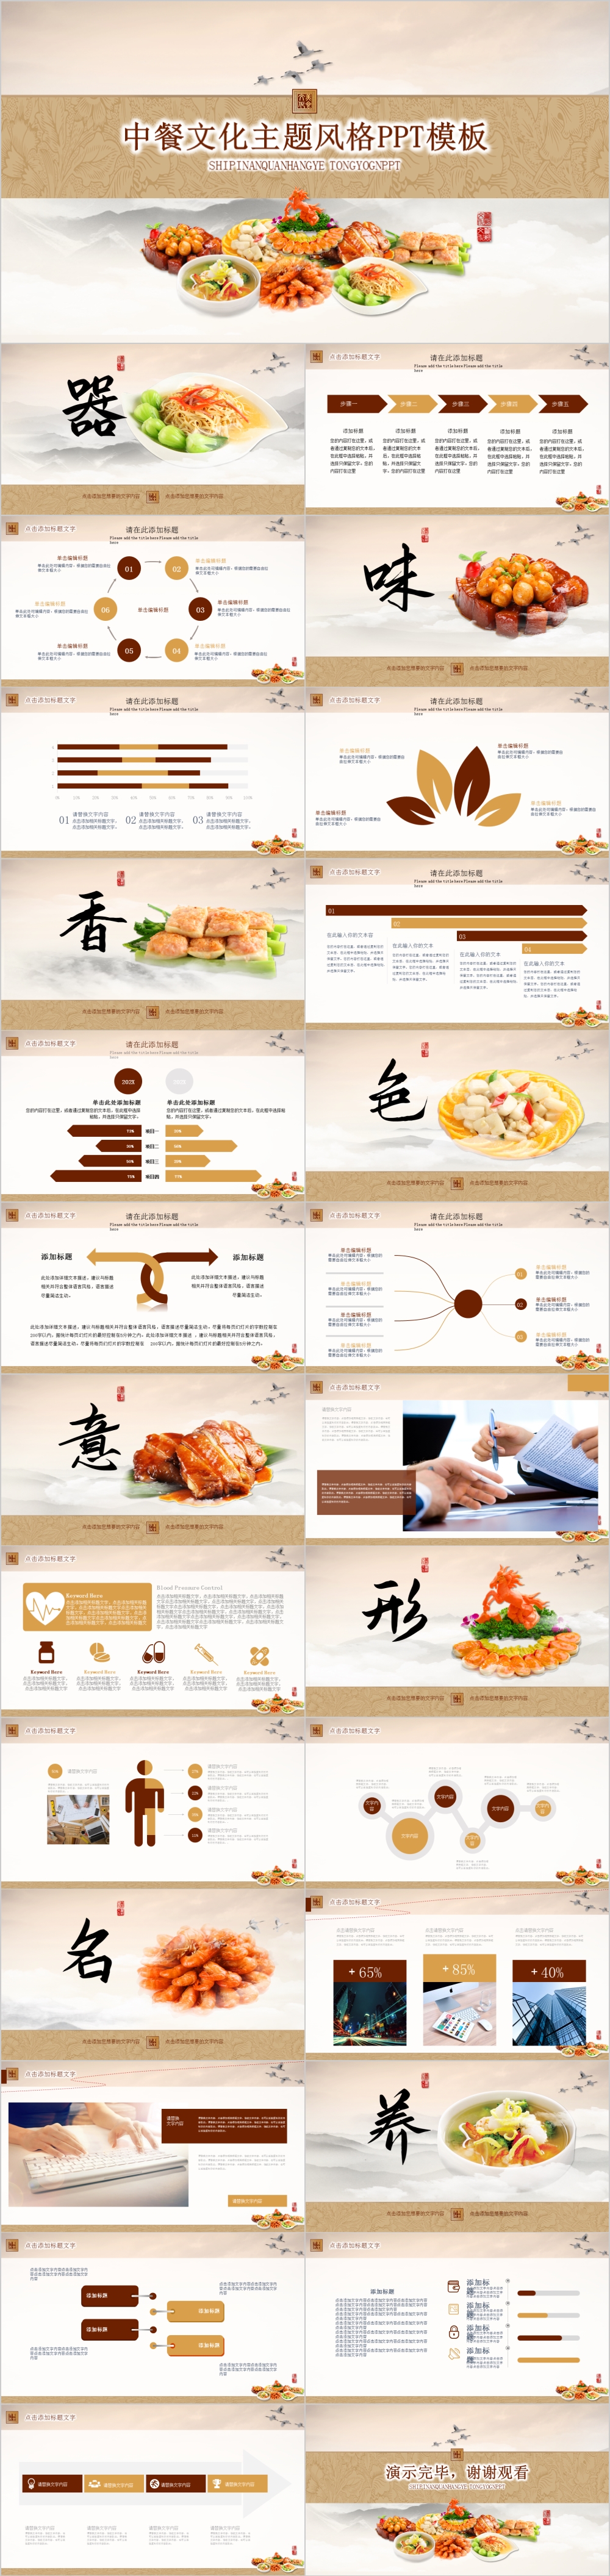 浅色中国风中餐文化主题风格PPT模板